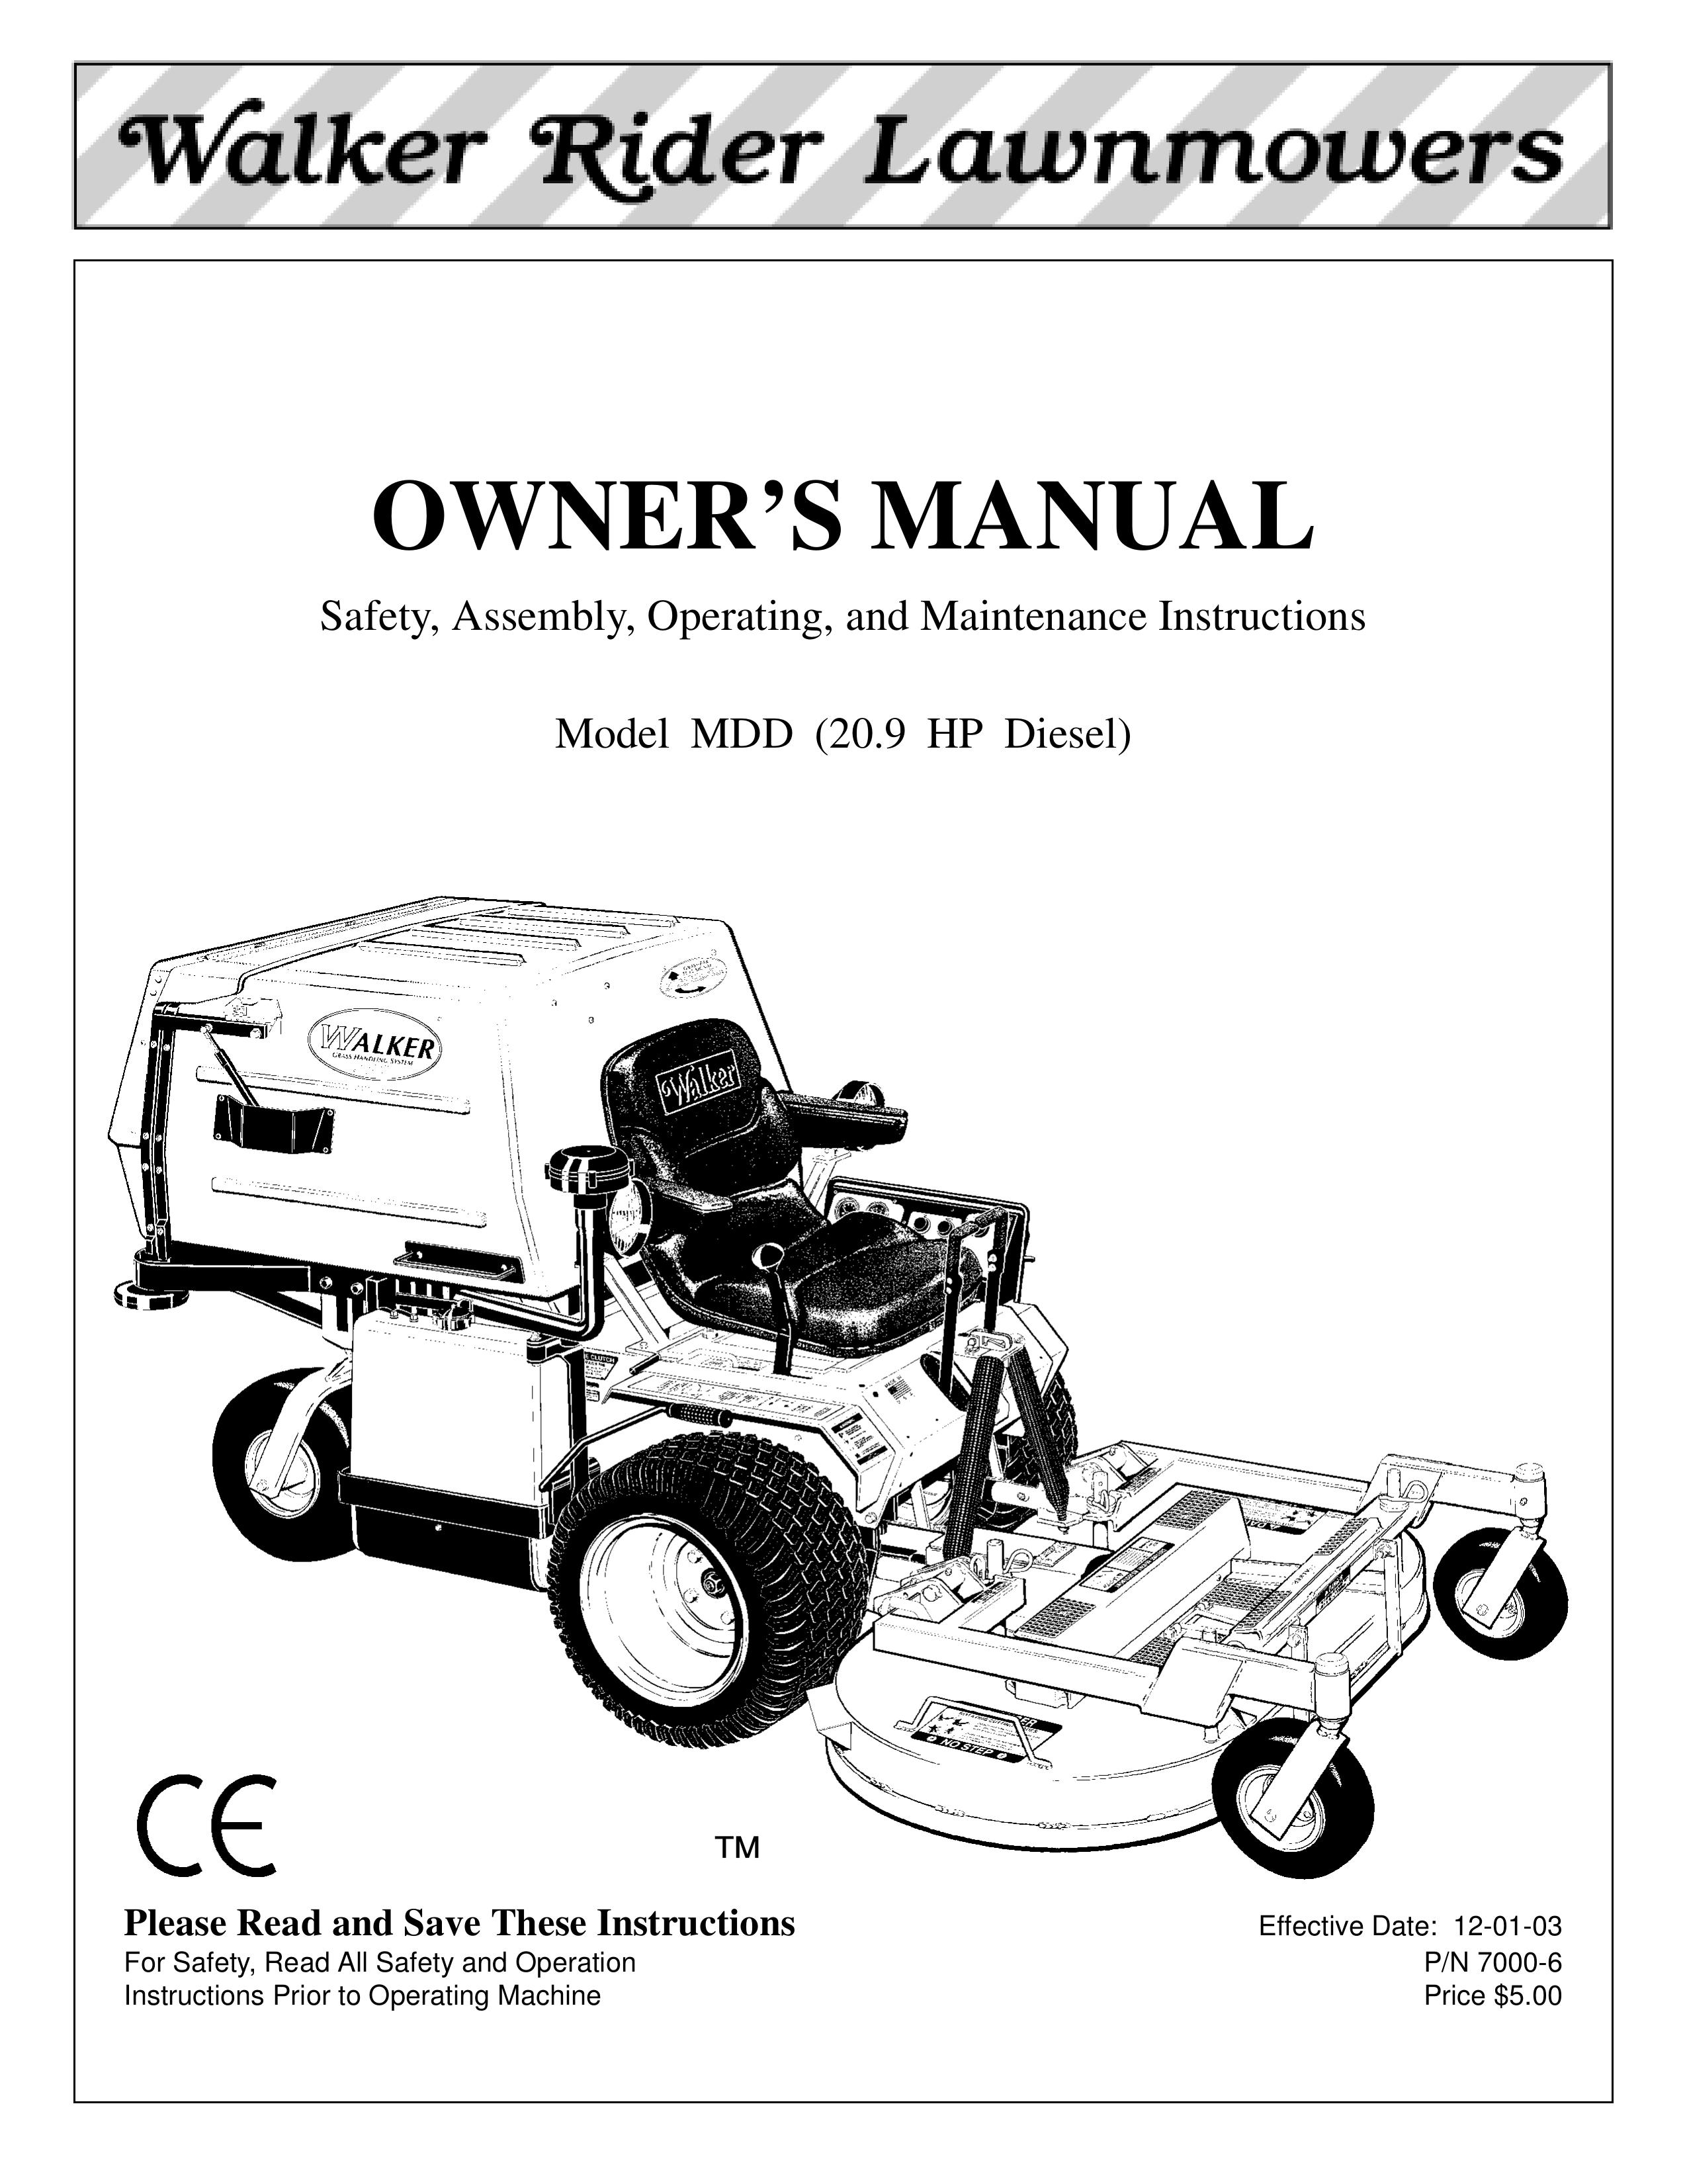 Walker MDD (20.9 HP) Lawn Mower User Manual